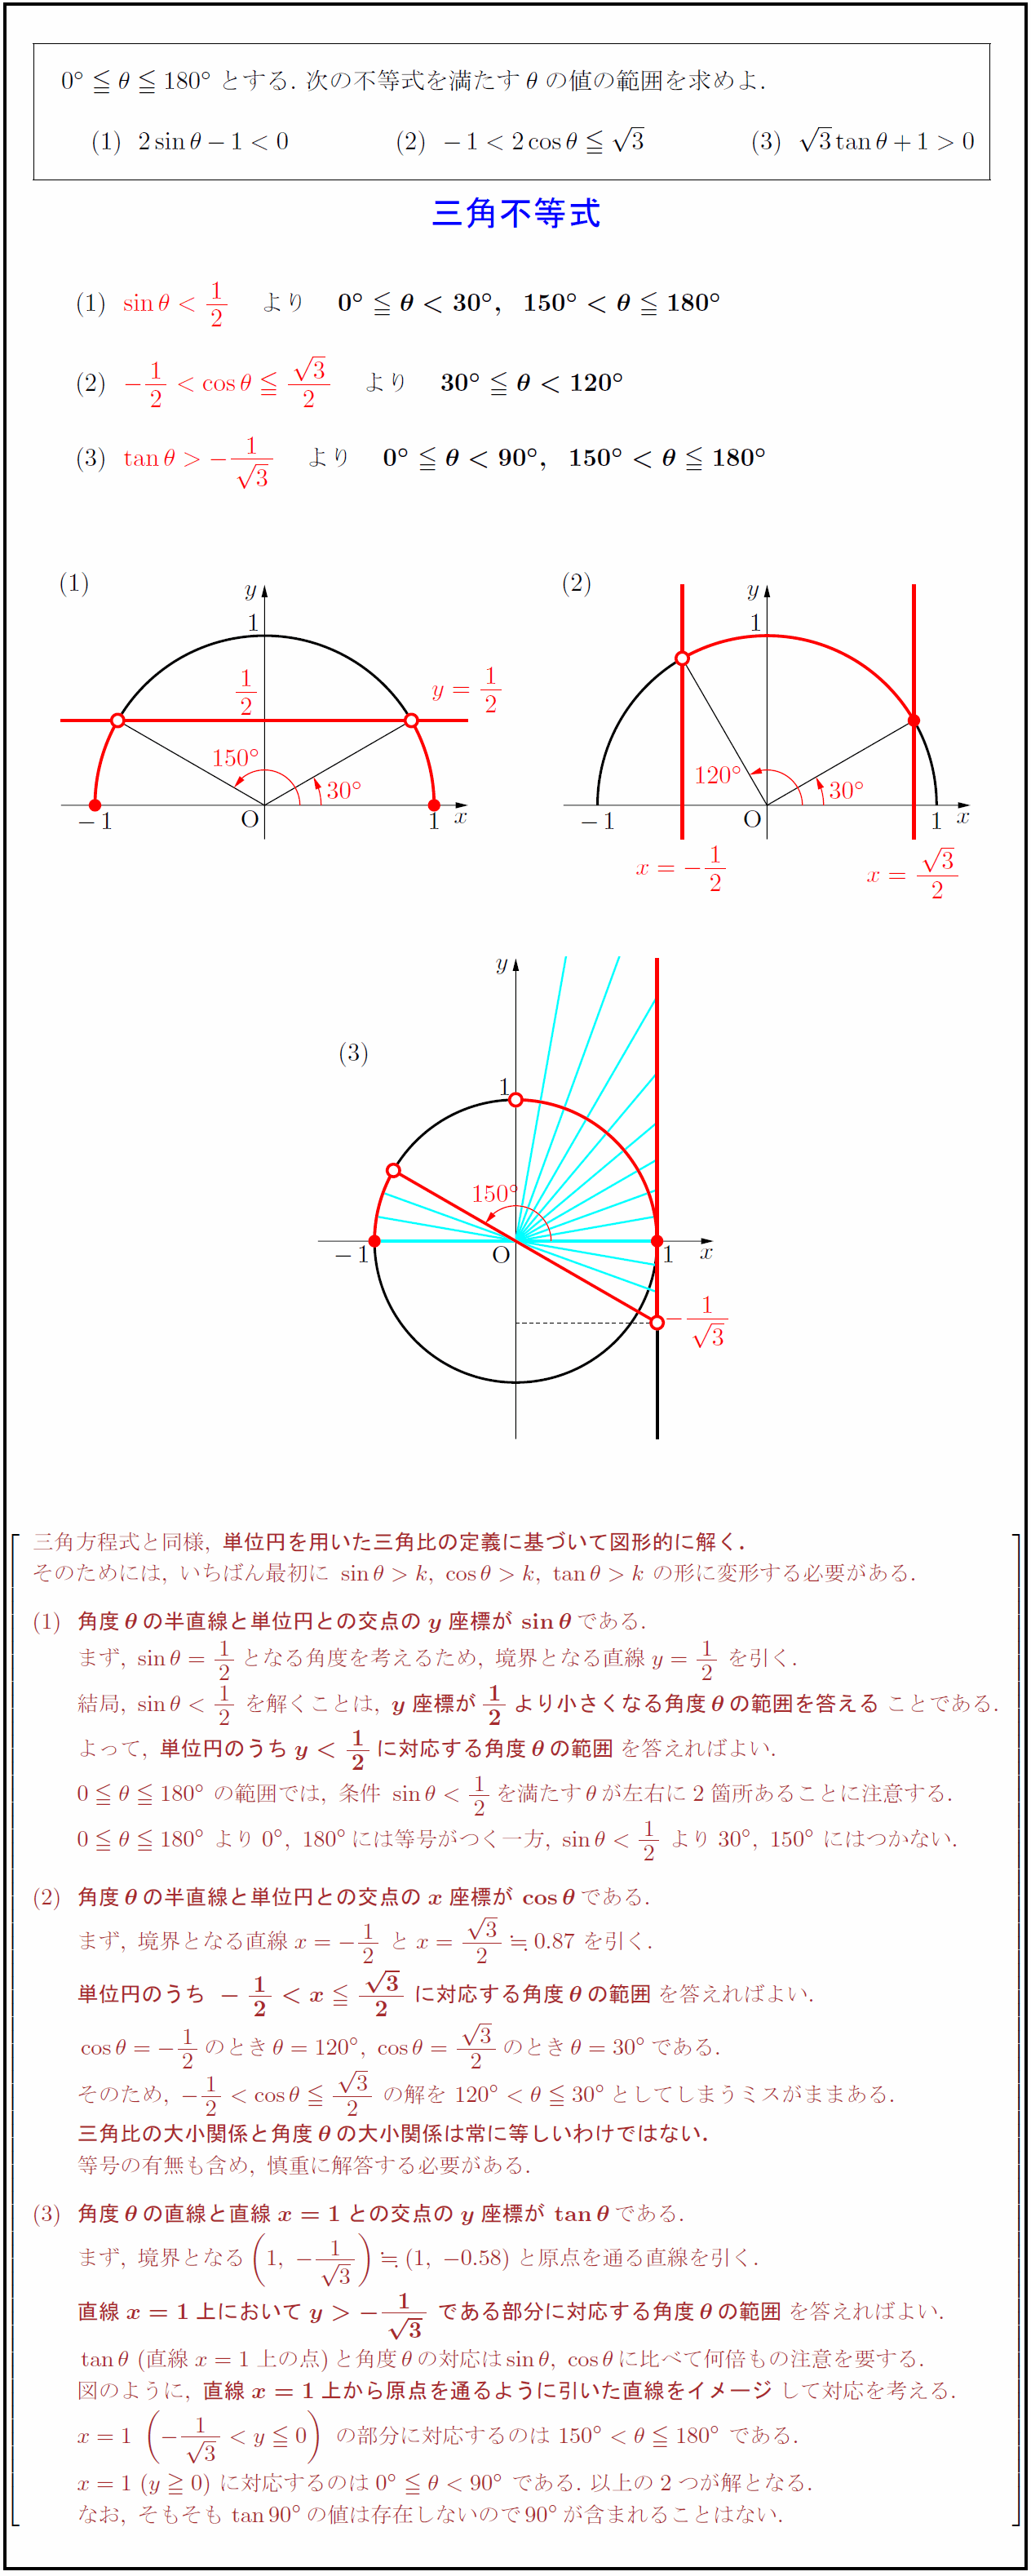 高校数学 基本的な三角不等式 Sin8 Gt K Cos8 Gt K Tan8 Gt K 受験の月